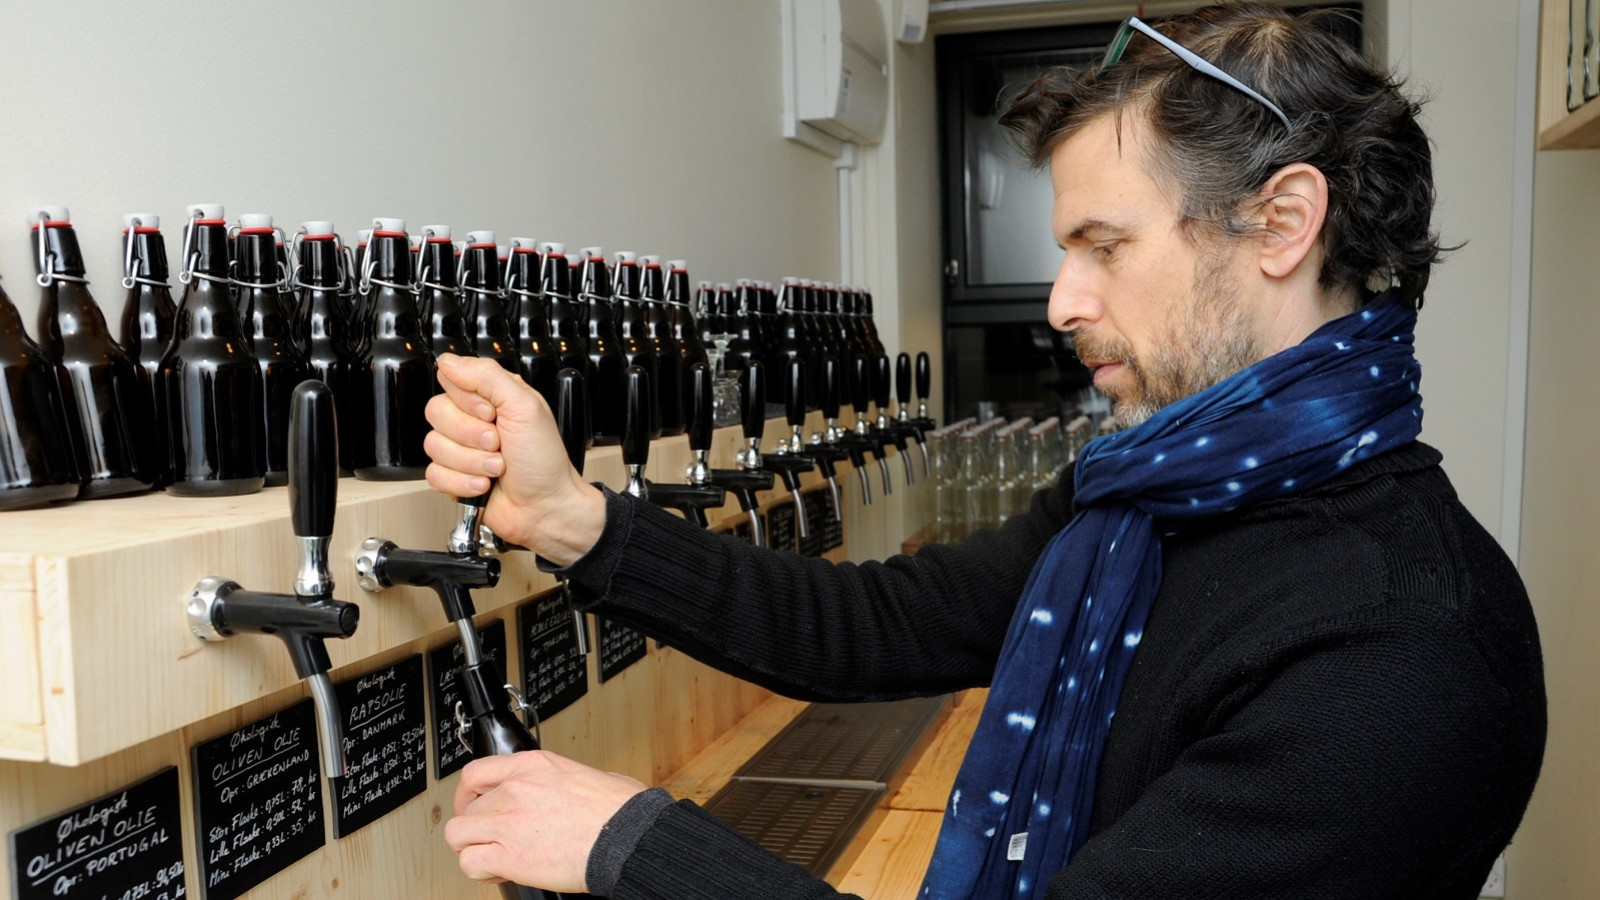 Frédéric Hamburger tapper olie på genbrugsflaske i LØS Market.